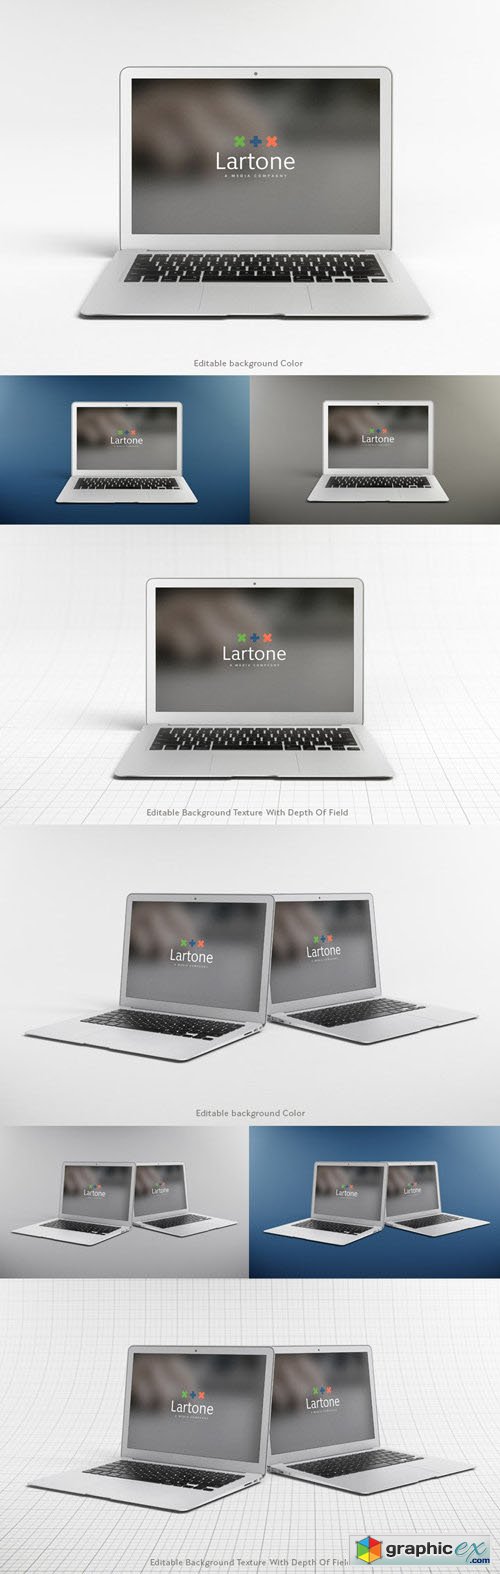 MacBook Air Mockup - Gray And Corporate